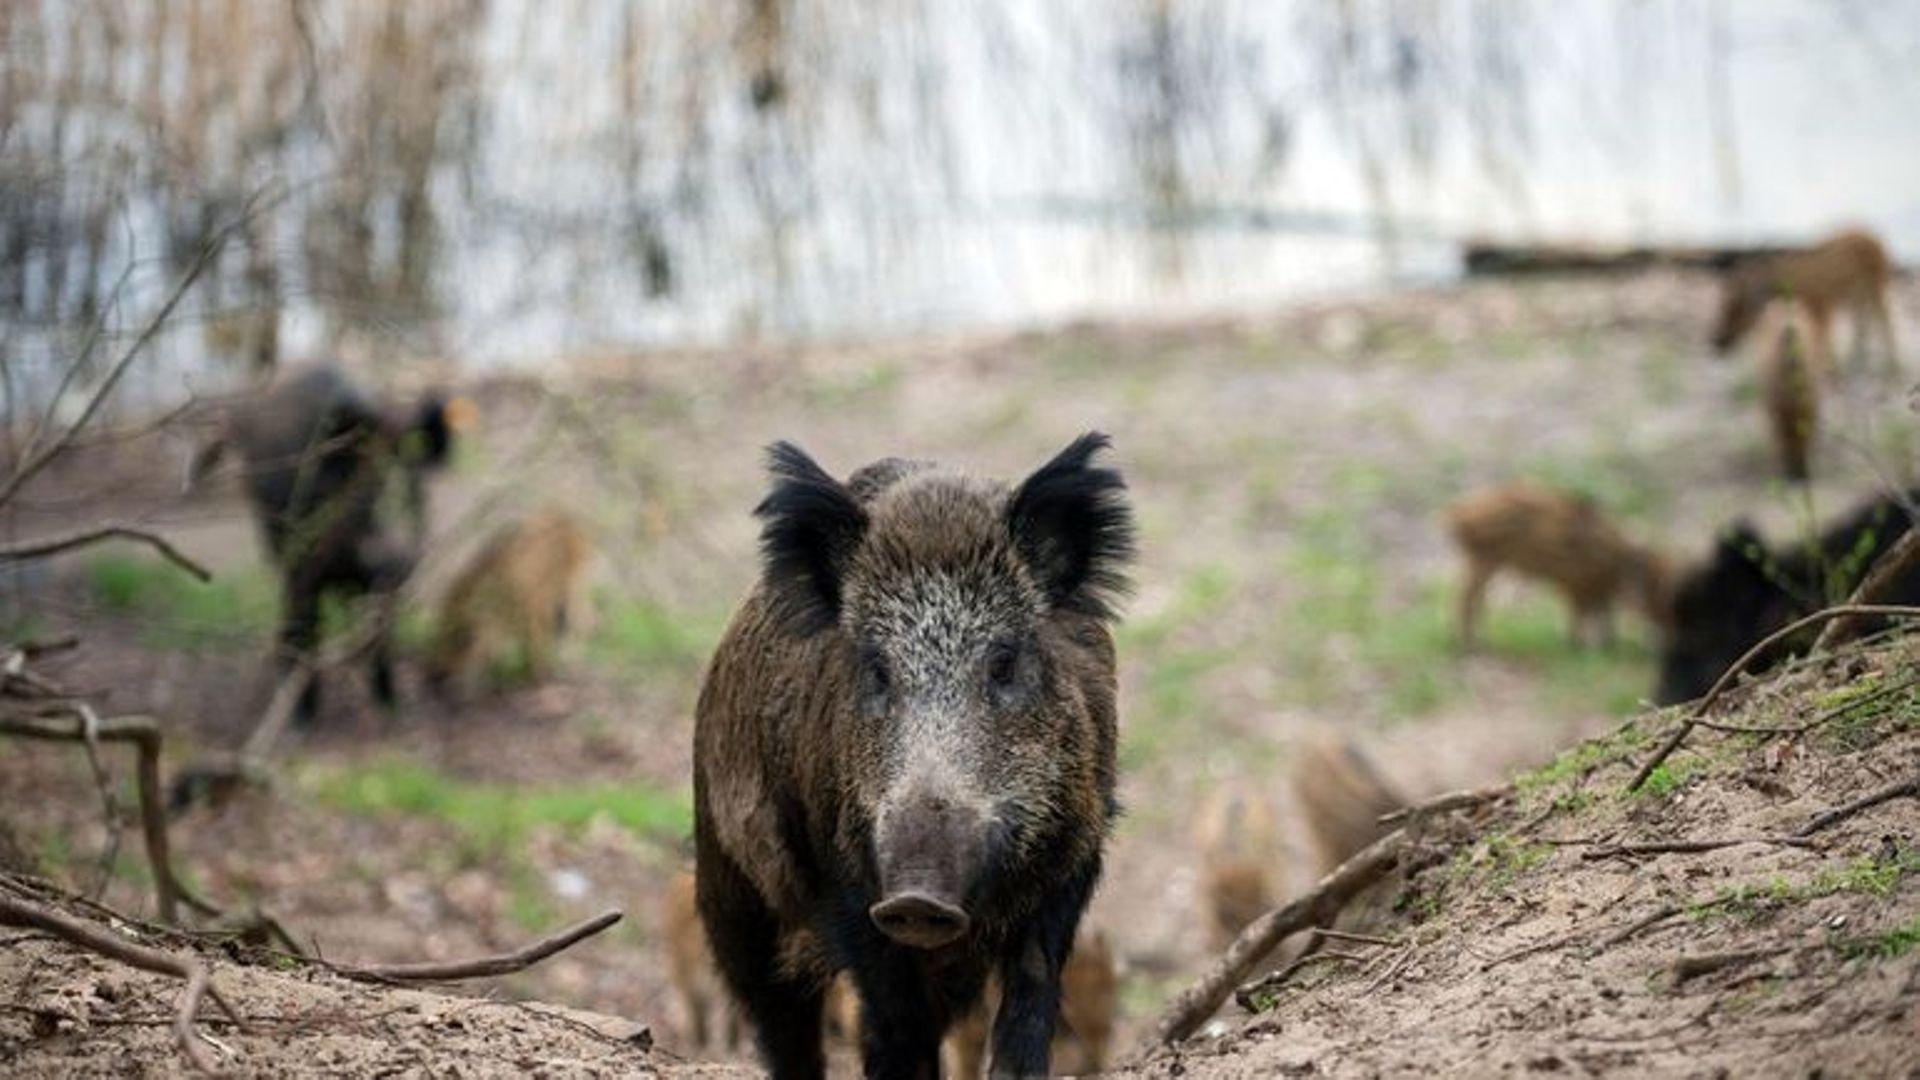 Peste porcine africaine : l'interdiction de circulation dans les bois est prolongée jusqu'au 15 mai